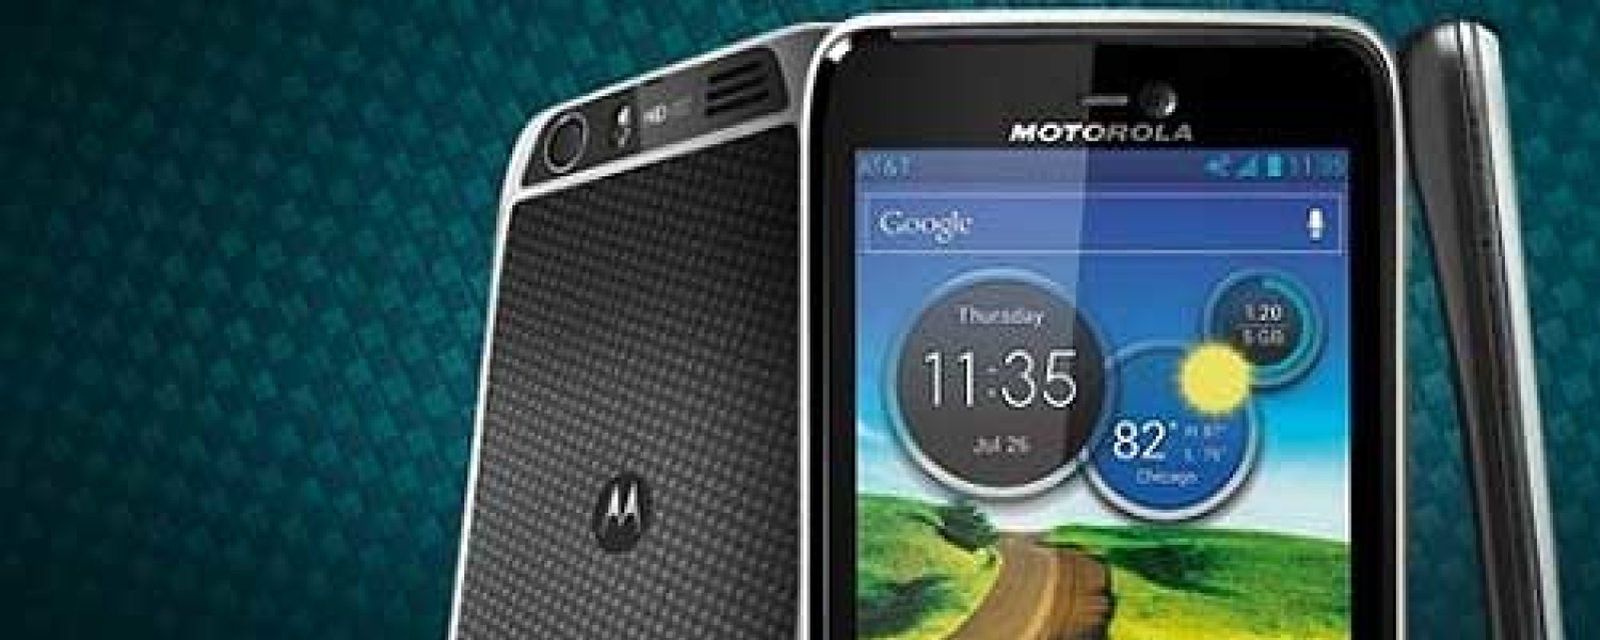 Foto: Motorola enamora con su Atrix HD, otro "megateléfono" que consolida el segmento